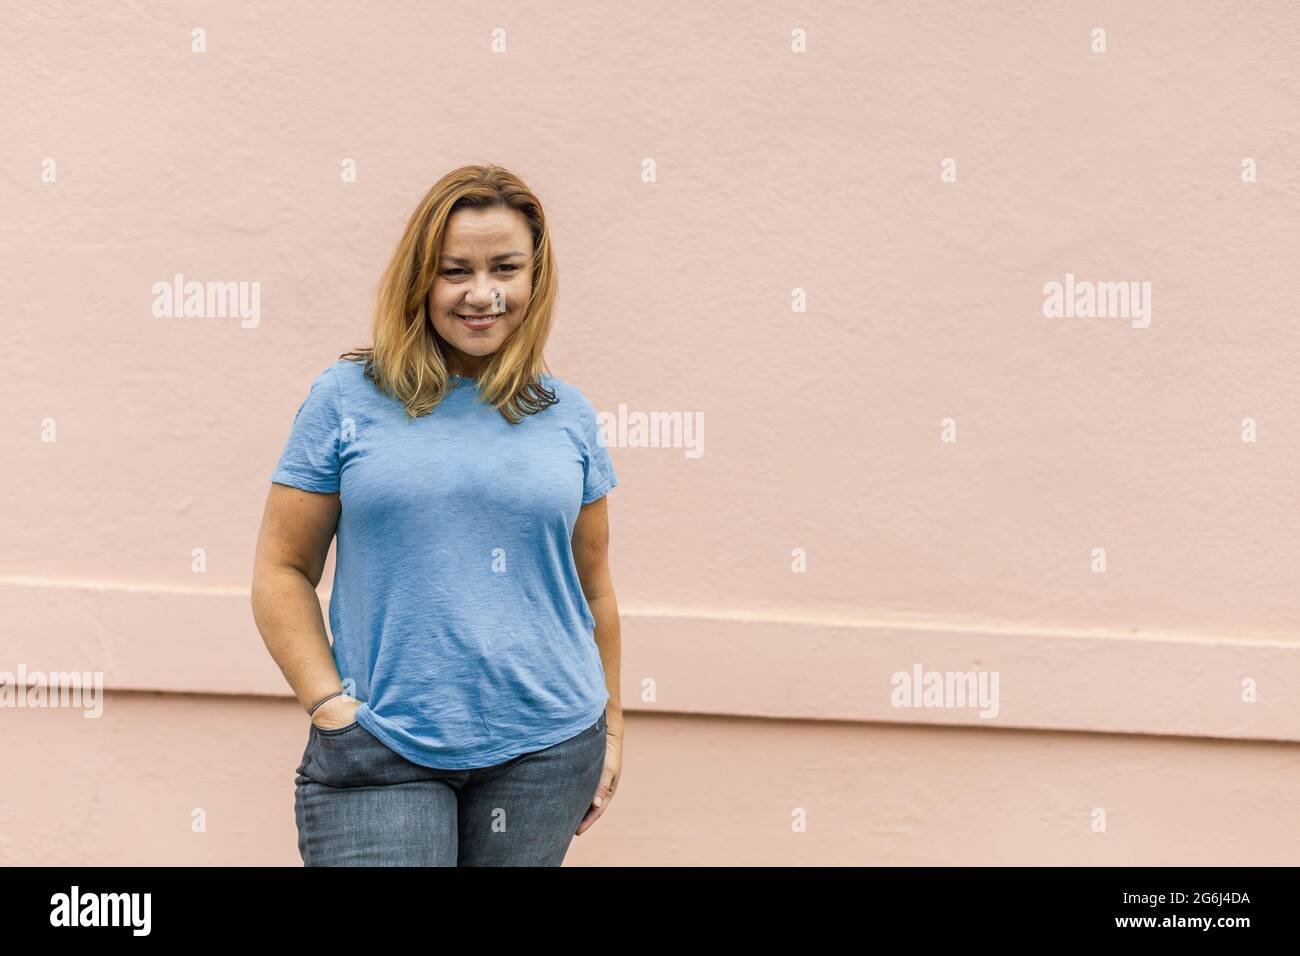 un'immagine completa di una donna in una t-shirt libera la tua mente con jeans Foto Stock